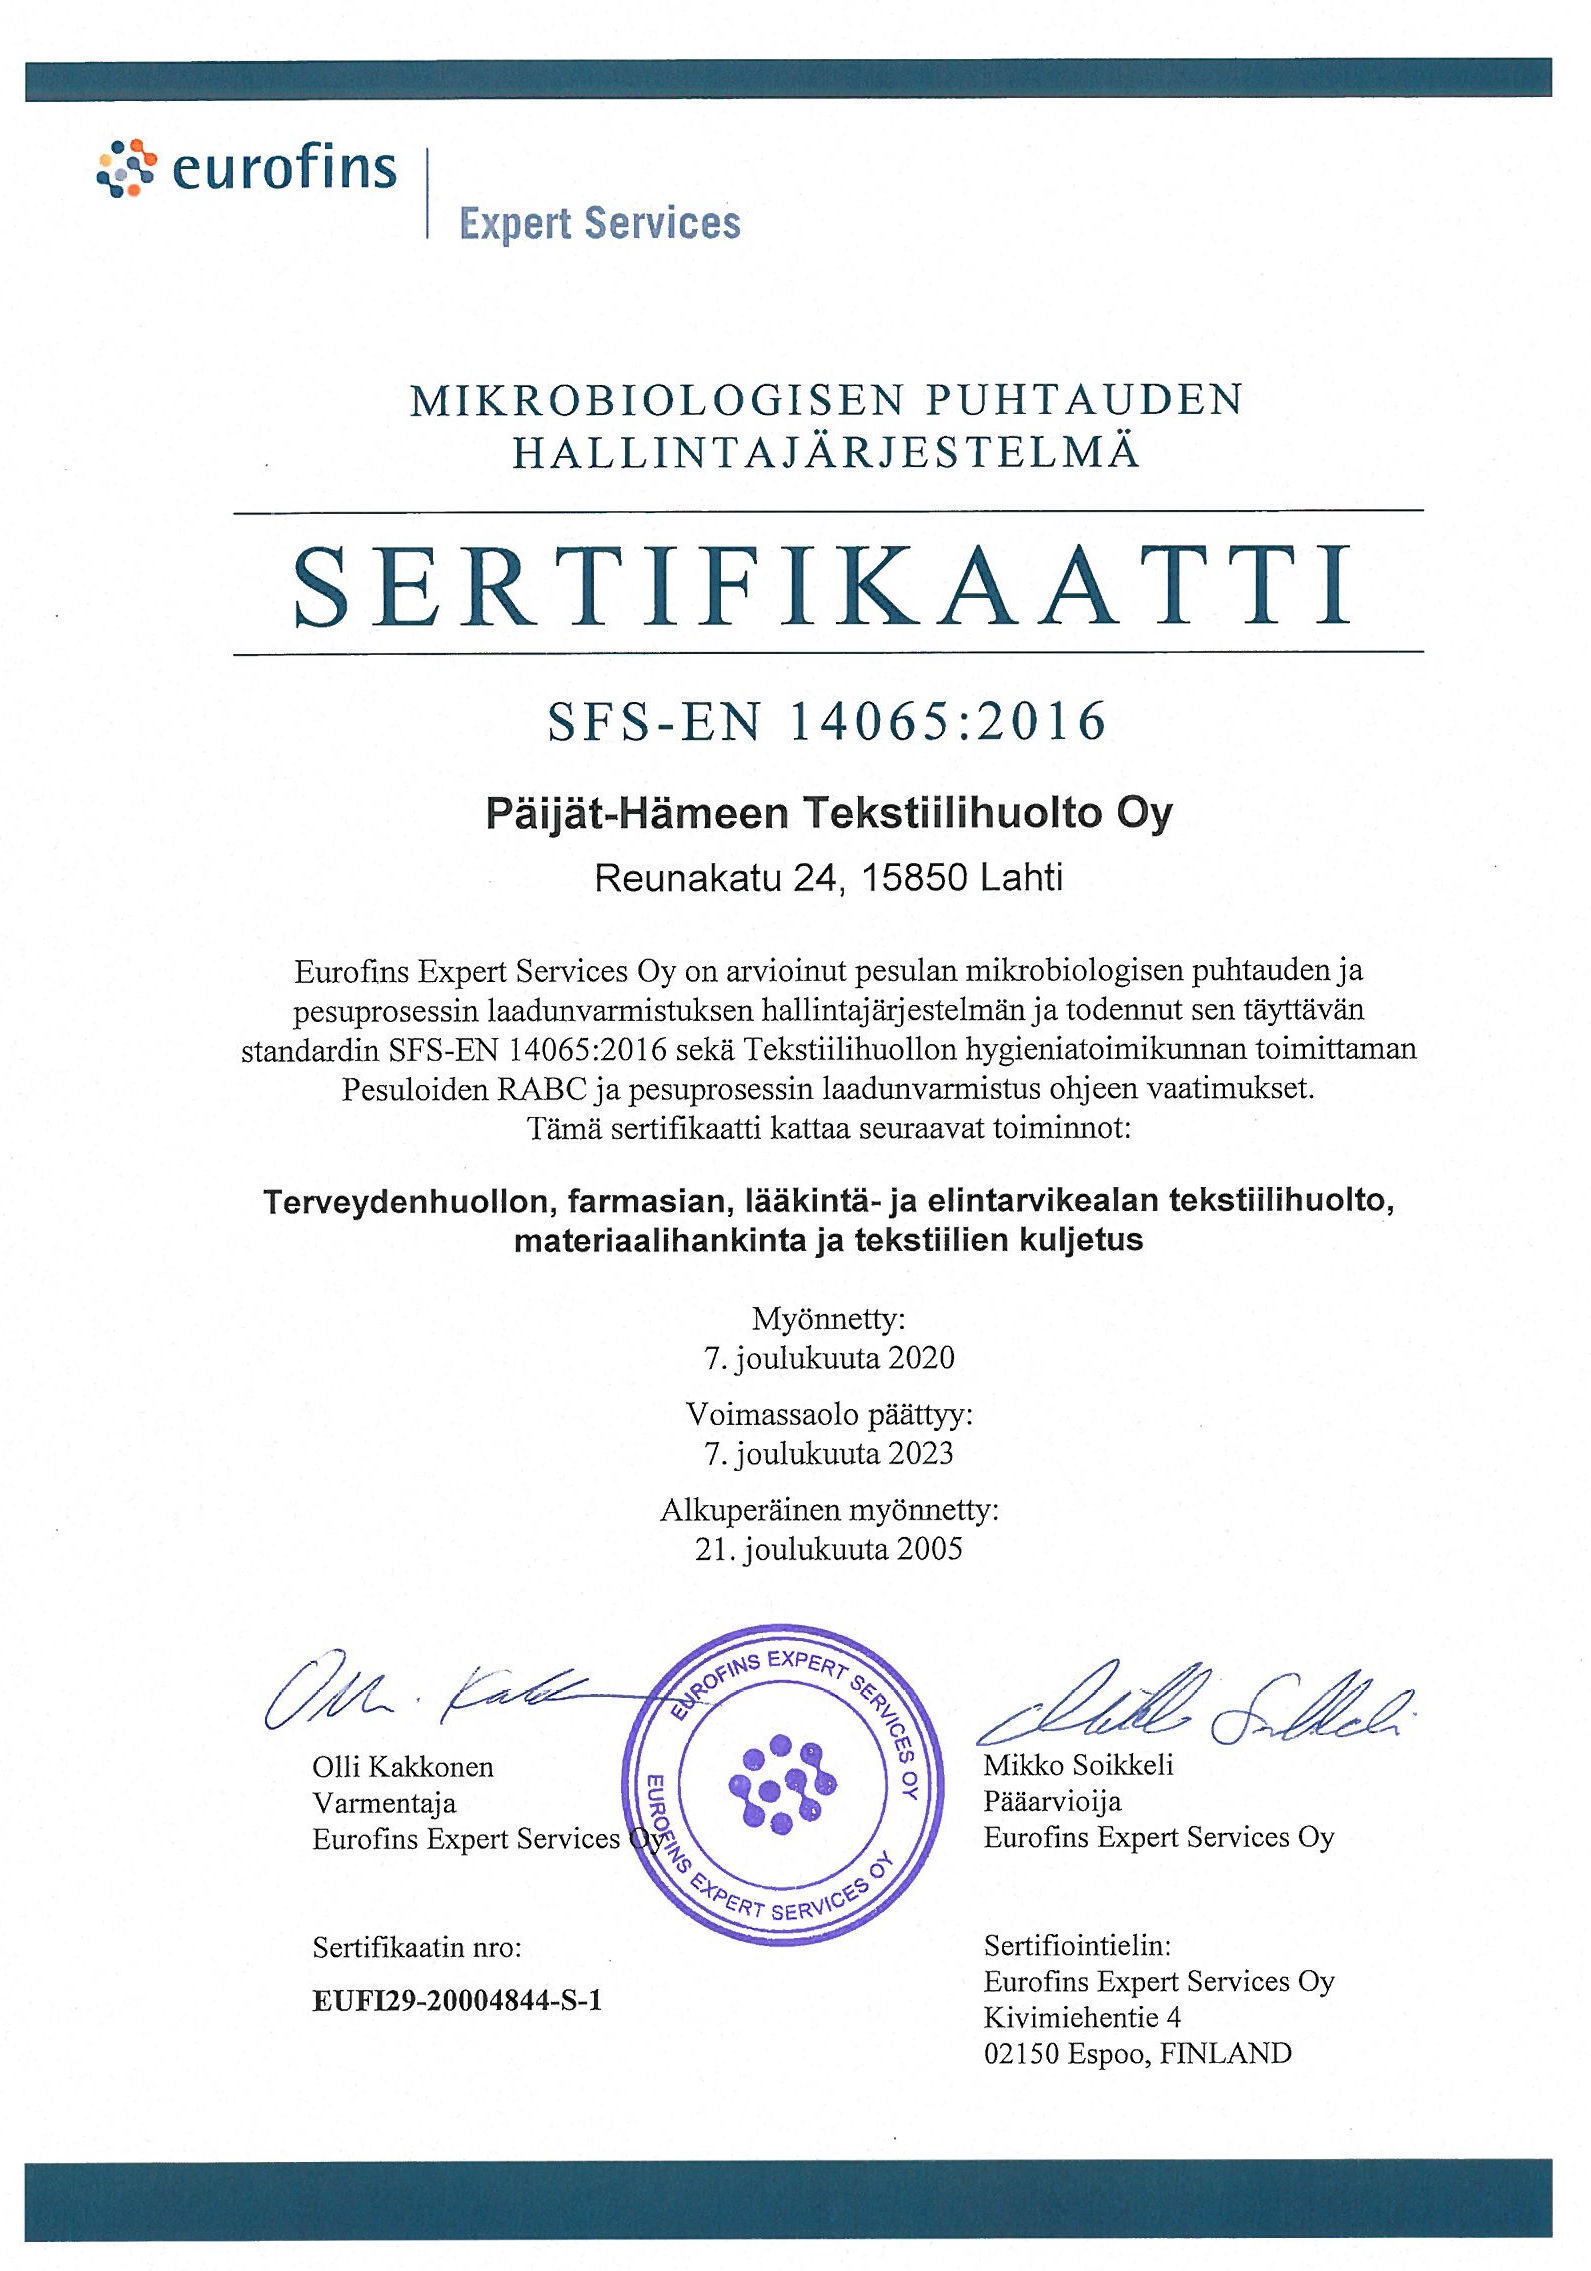 SFS-EN 14065 sertifikaatti